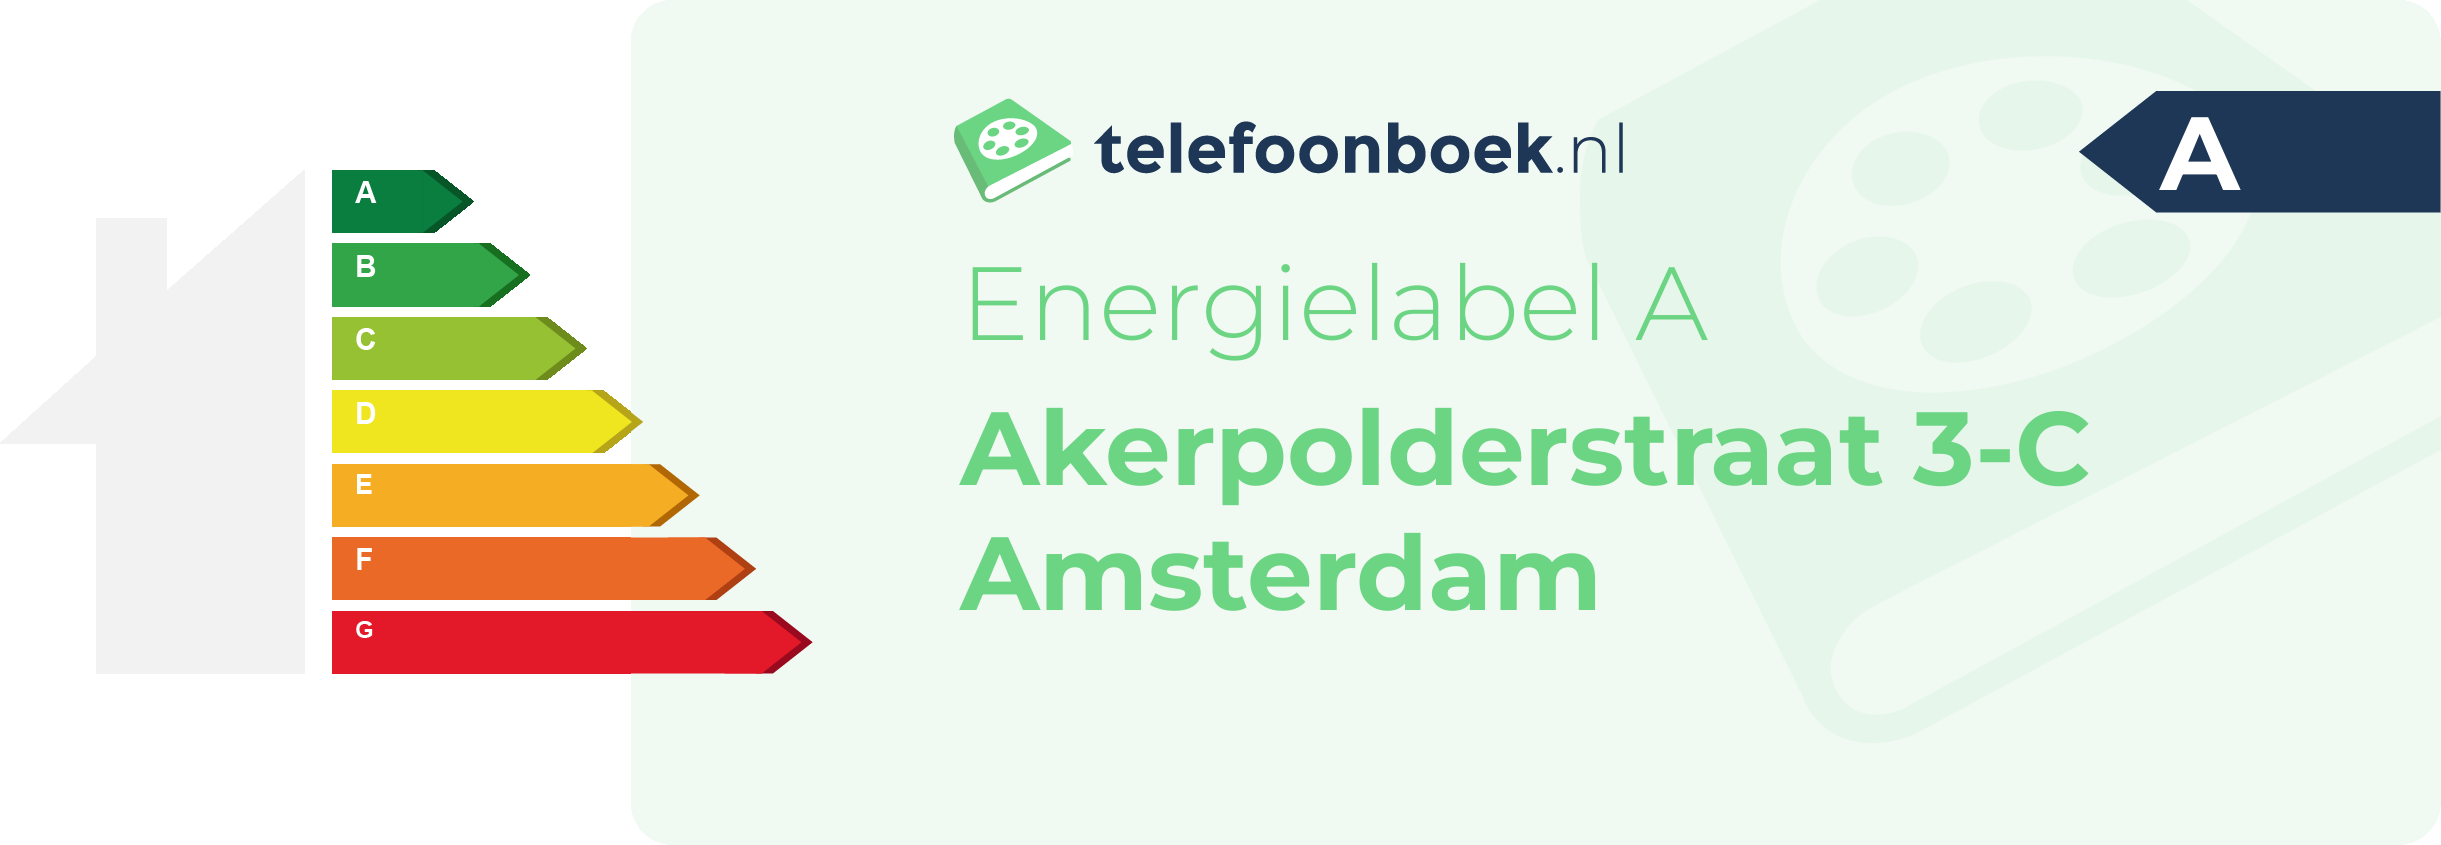 Energielabel Akerpolderstraat 3-C Amsterdam